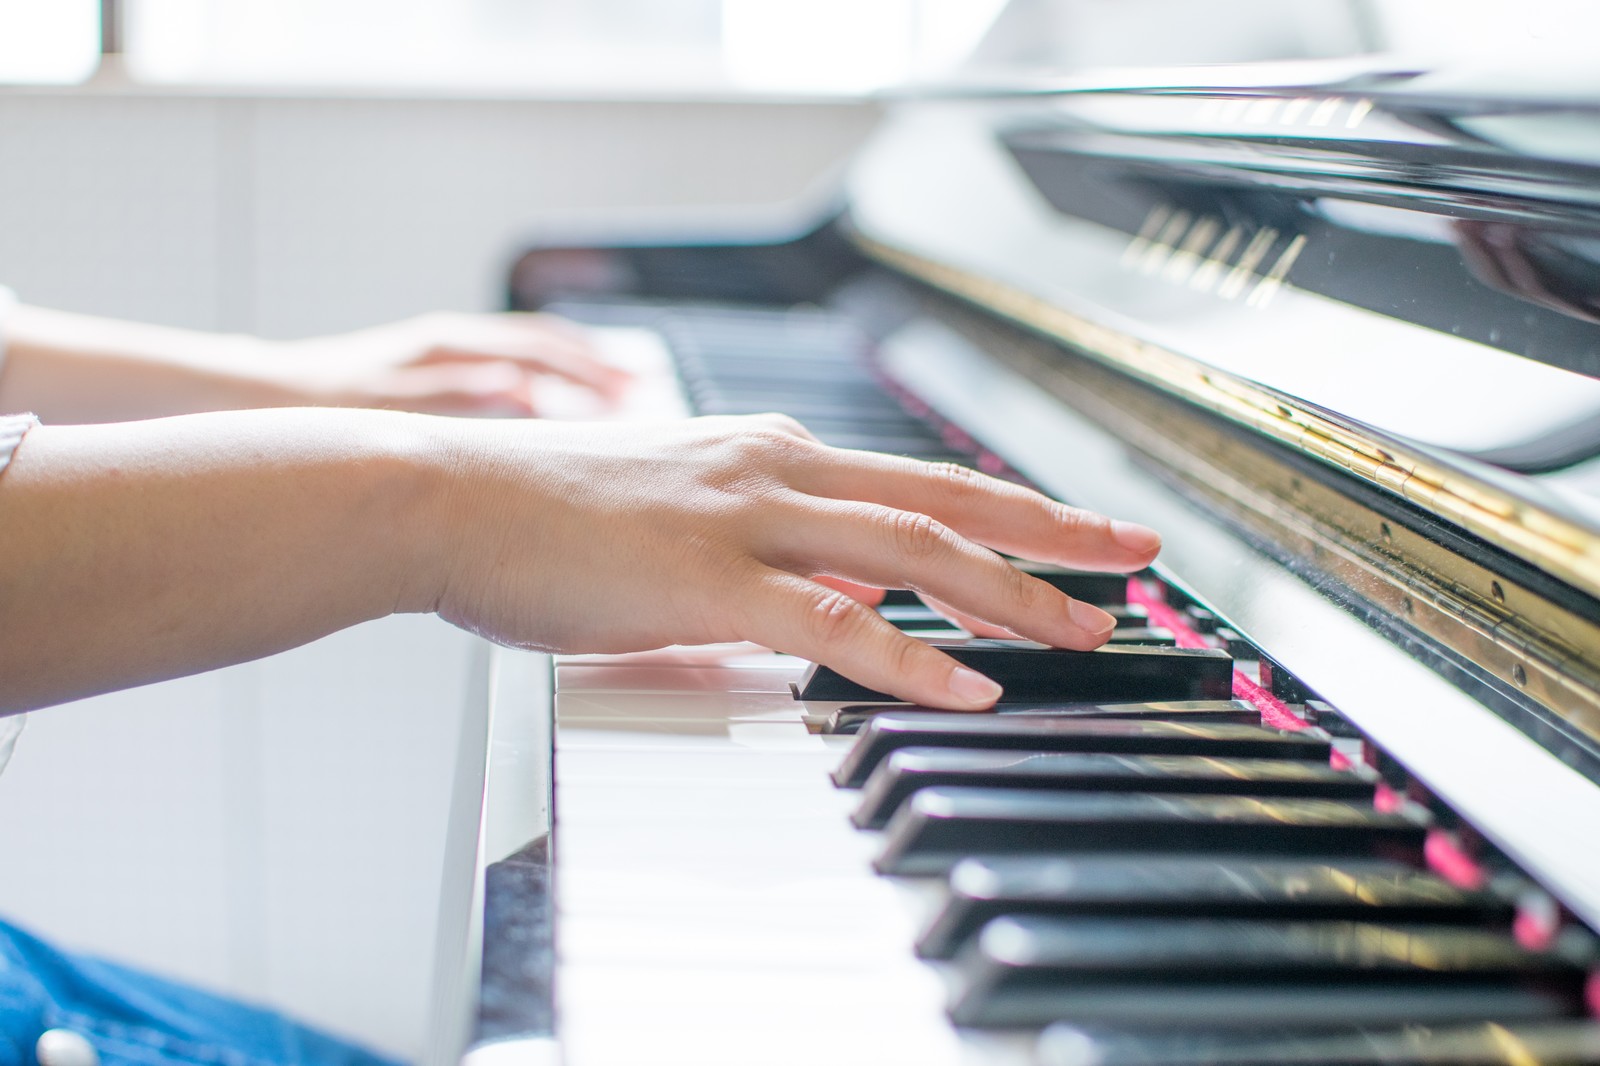 ピアノ初心者でも合格できた、保育士実技試験「音楽」の練習法